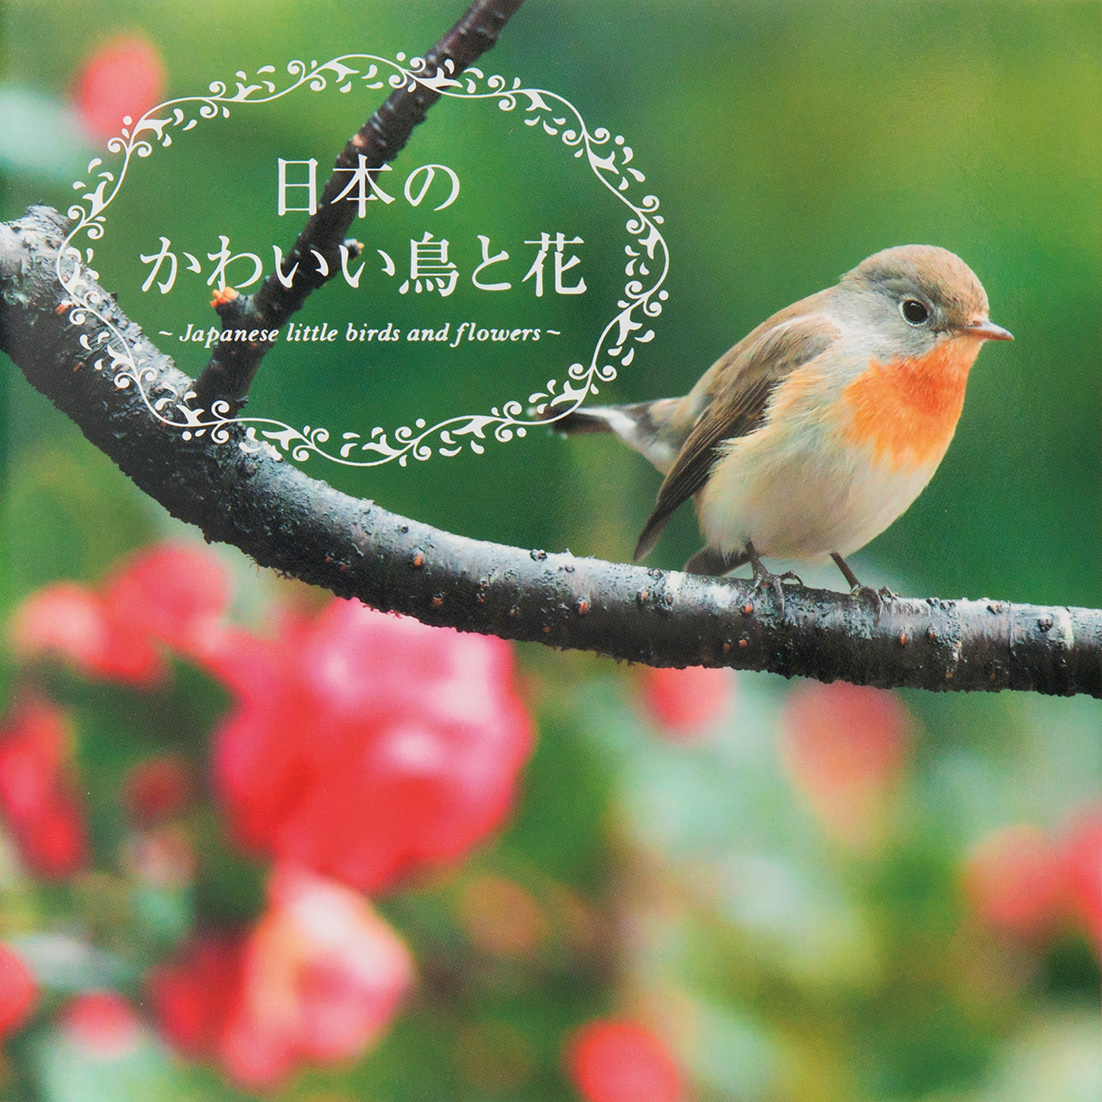 野鳥撮影の第一人者がおくる 可憐な野の鳥と日本の四季 日本のかわいい鳥と花 発売 株式会社パイ インターナショナルのプレスリリース